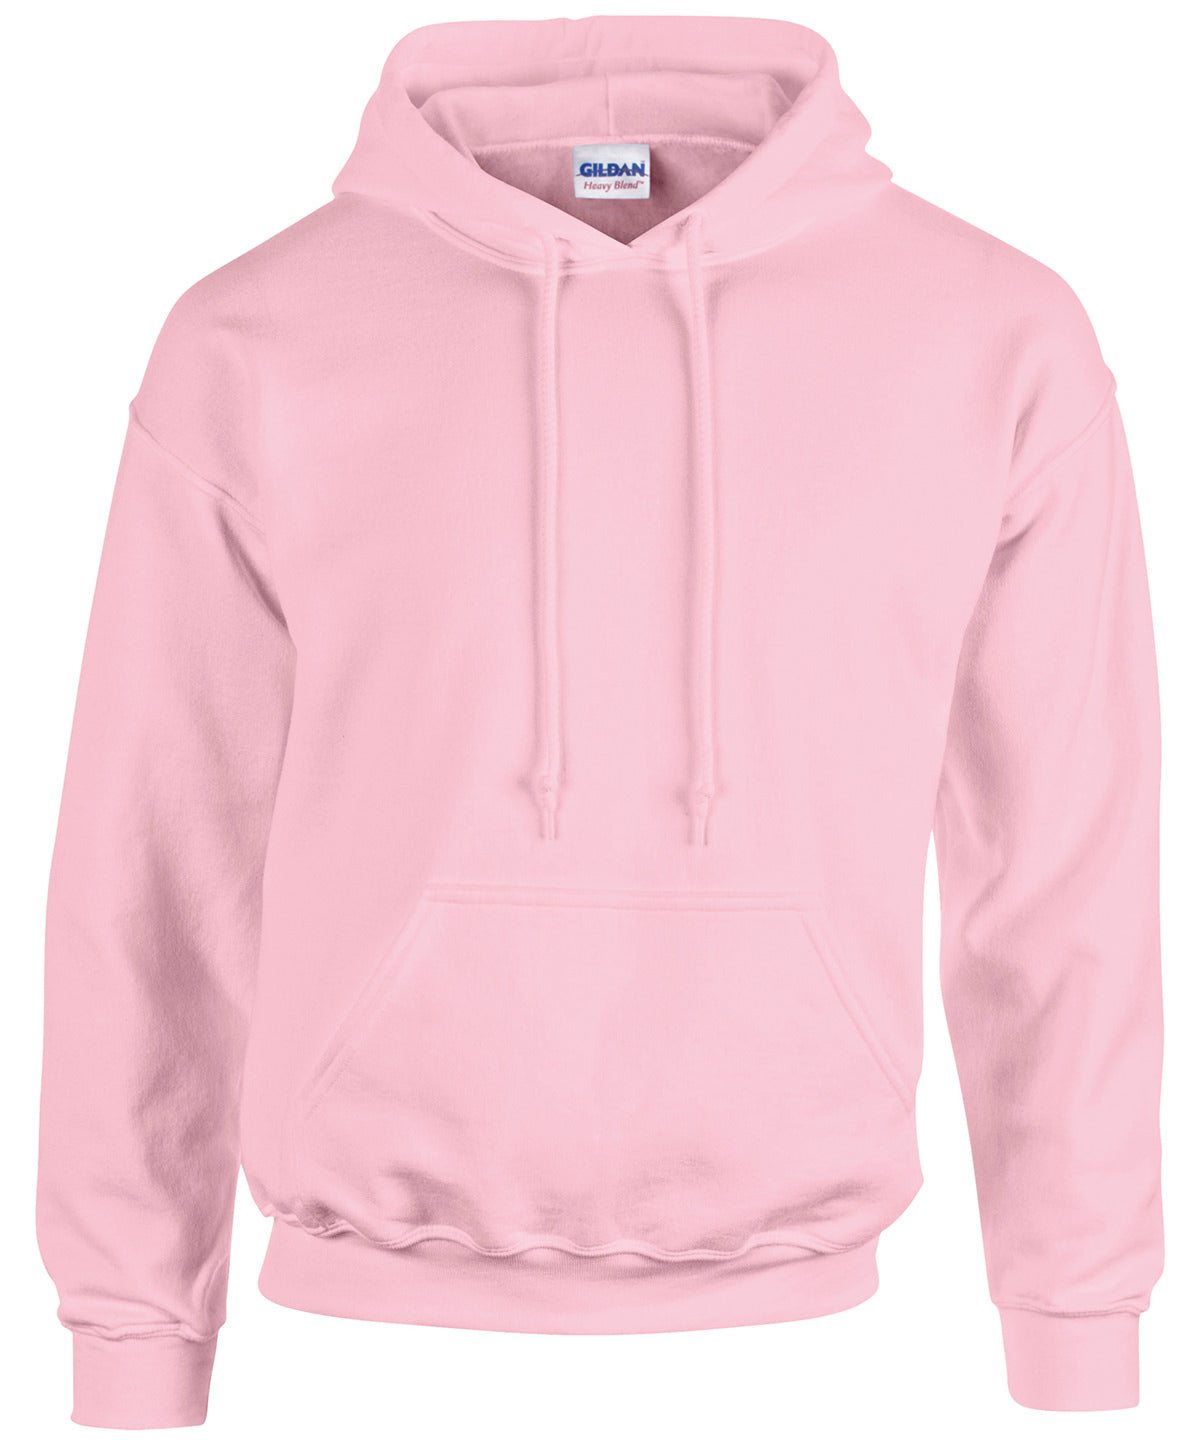 Personalised Hoodies - Mid Pink Gildan Heavy Blend™ hooded sweatshirt